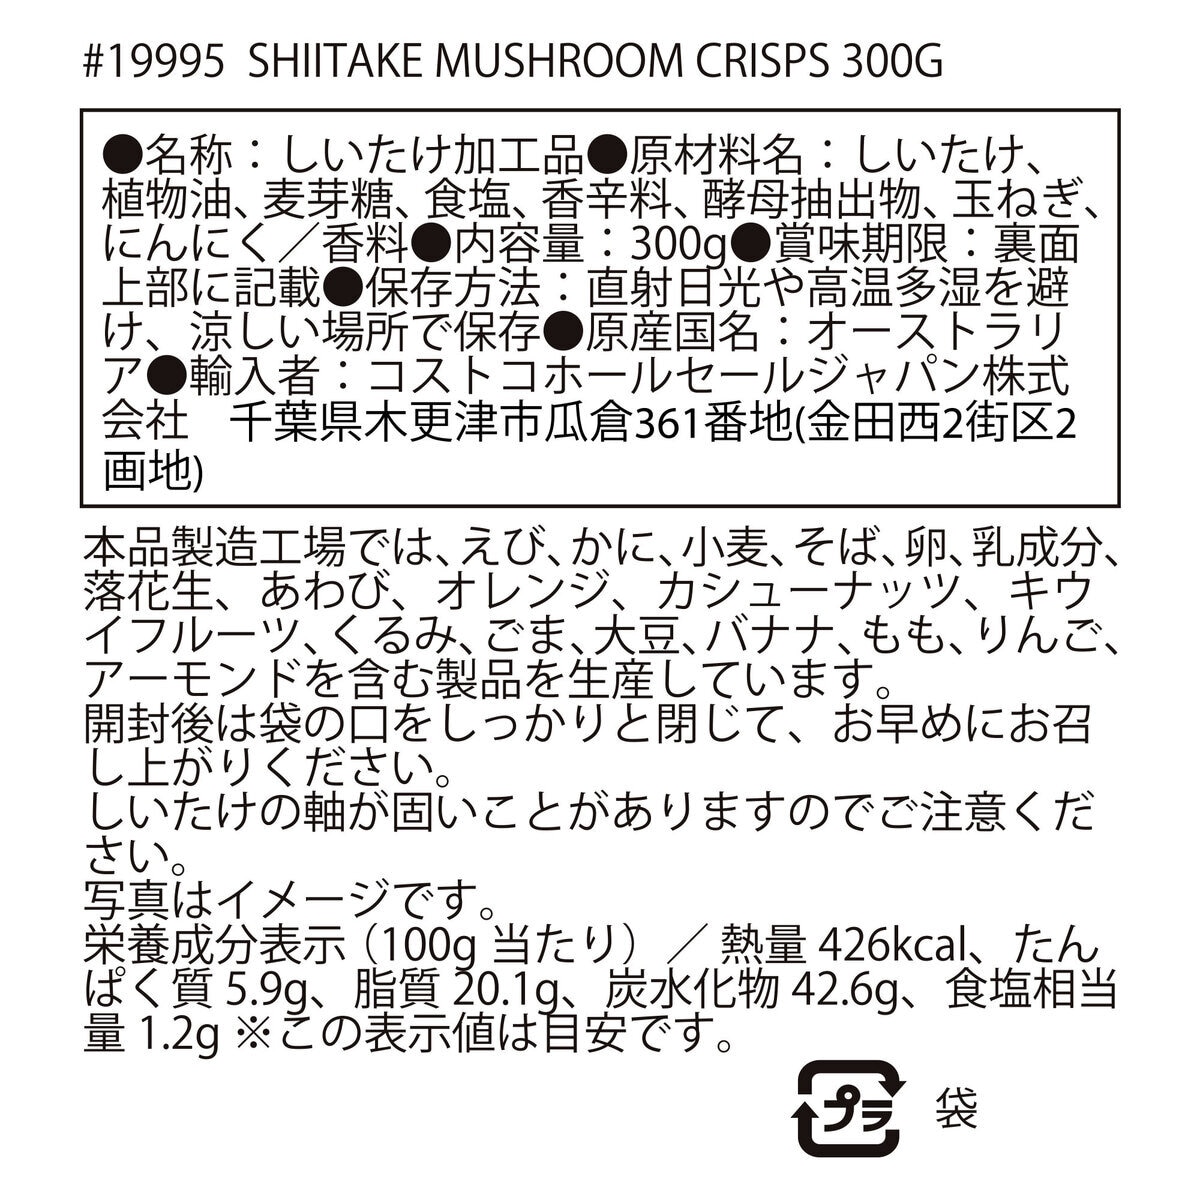 DJ&A シイタケマッシュルームクリスプ 300g | Costco Japan